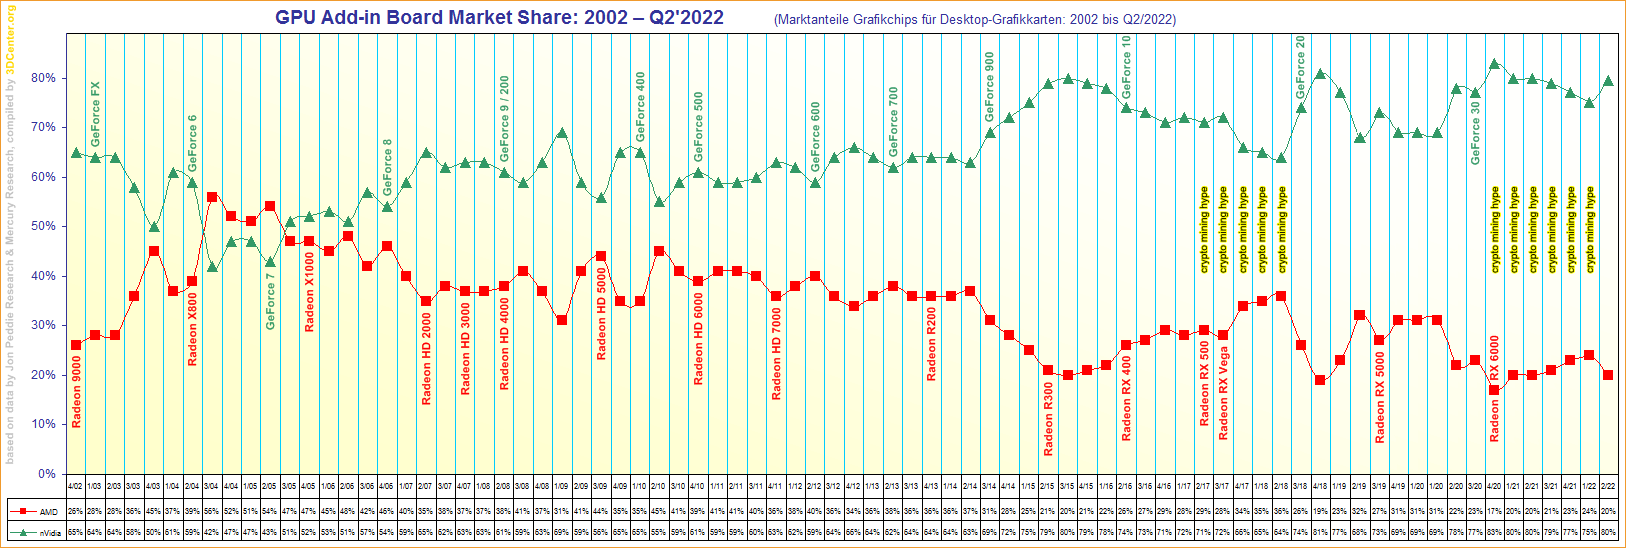 Marktanteile Grafikchips für Desktop-Grafikkarten von 2002 bis Q2/2022